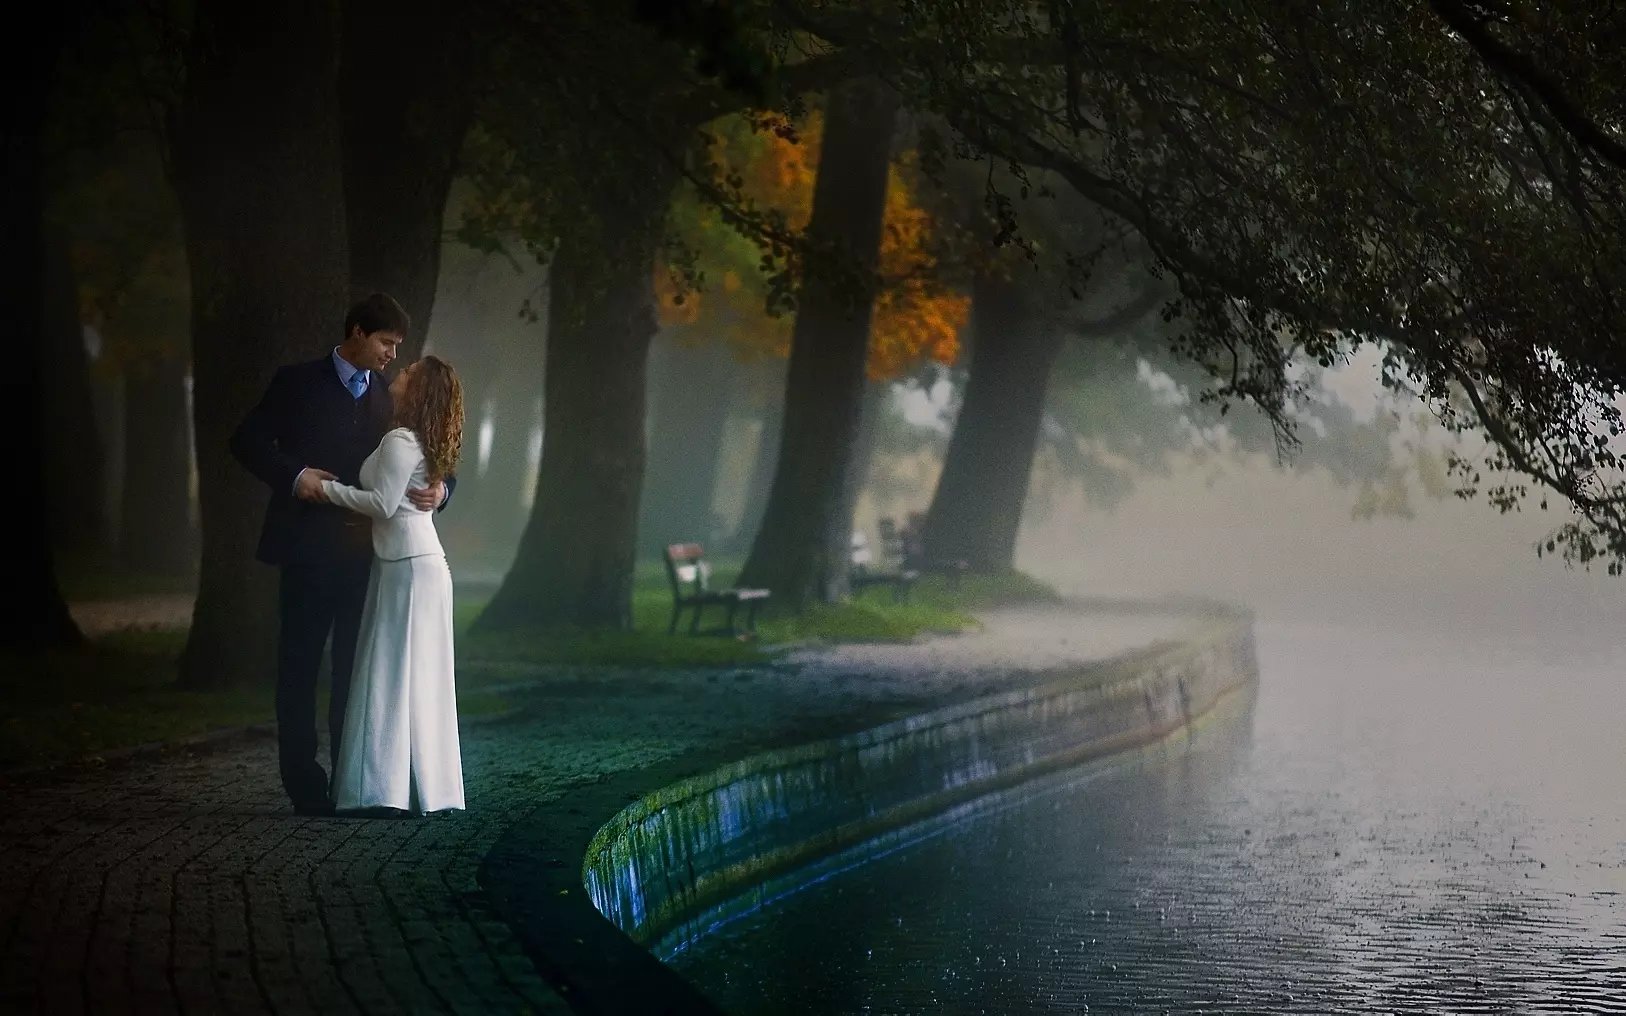 Malownicza scena ukazująca scenę przytulania się zakochanej pary nad jeziorem o poranku